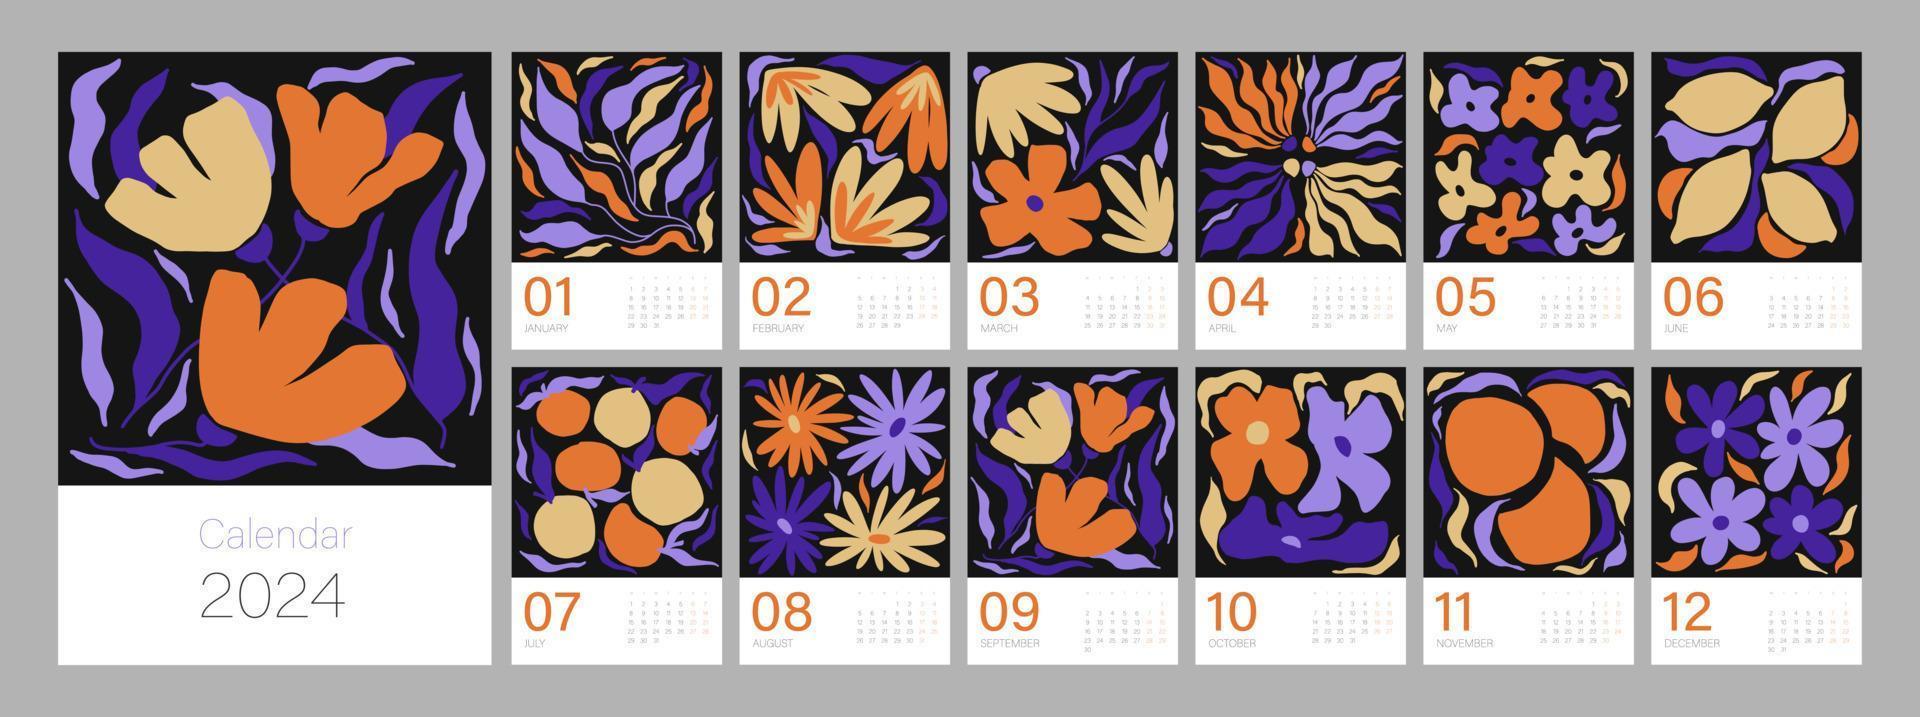 blommig kalender mall för 2024. vertikal design med ljus färgrik blommor och löv. redigerbar illustration sida mall a4, a3, uppsättning av 12 månader med omslag. vektor maska. vecka börjar på måndag.